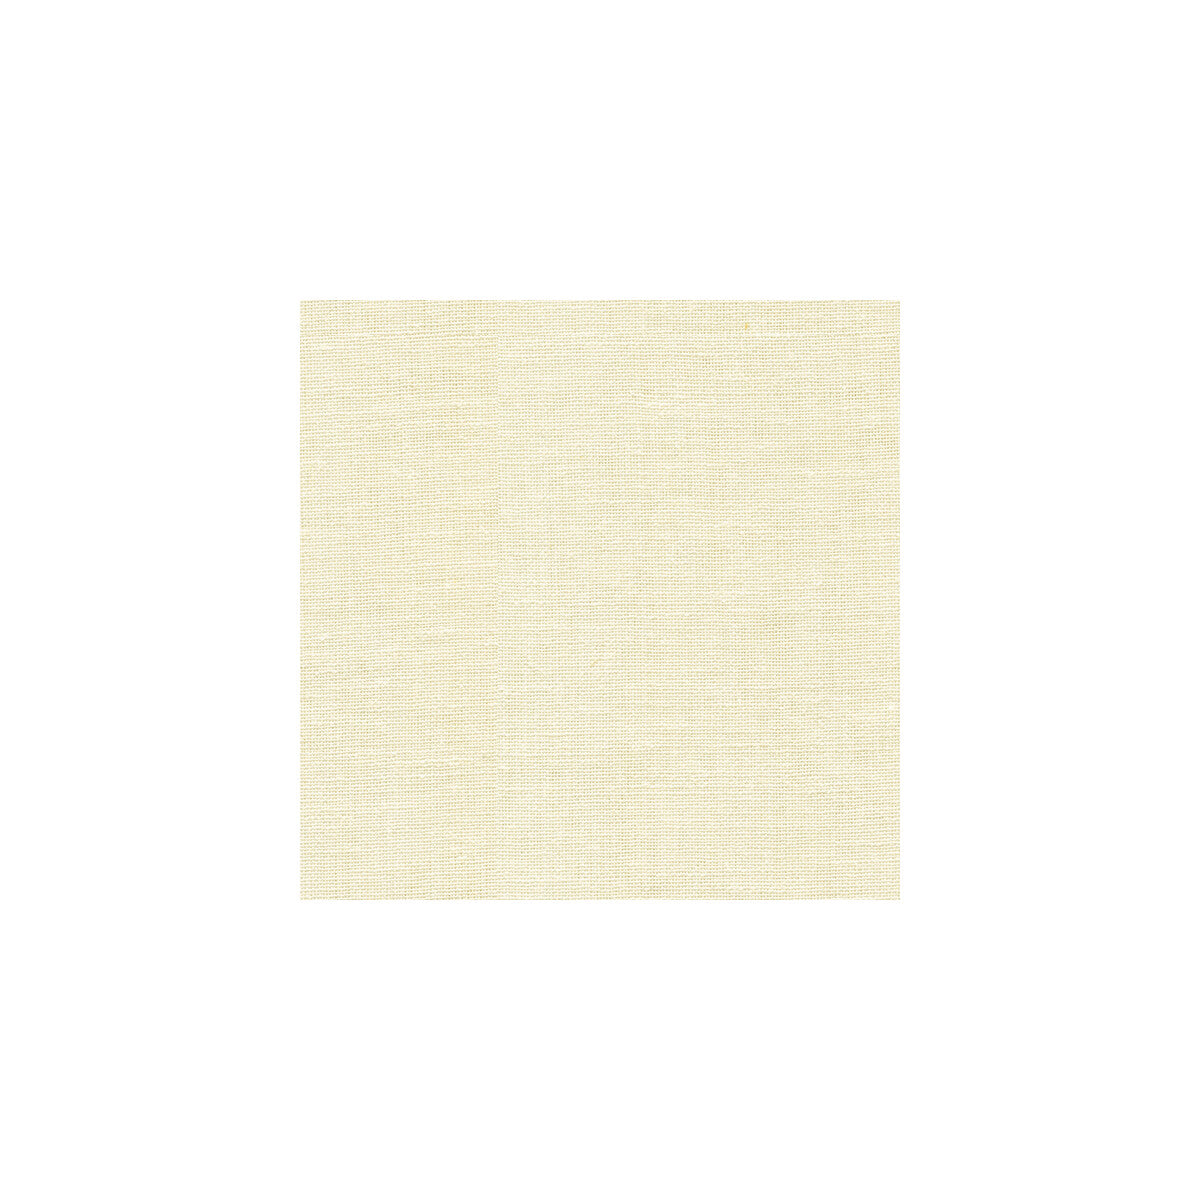 Kravet Basics fabric in 9934-1 color - pattern 9934.1.0 - by Kravet Basics